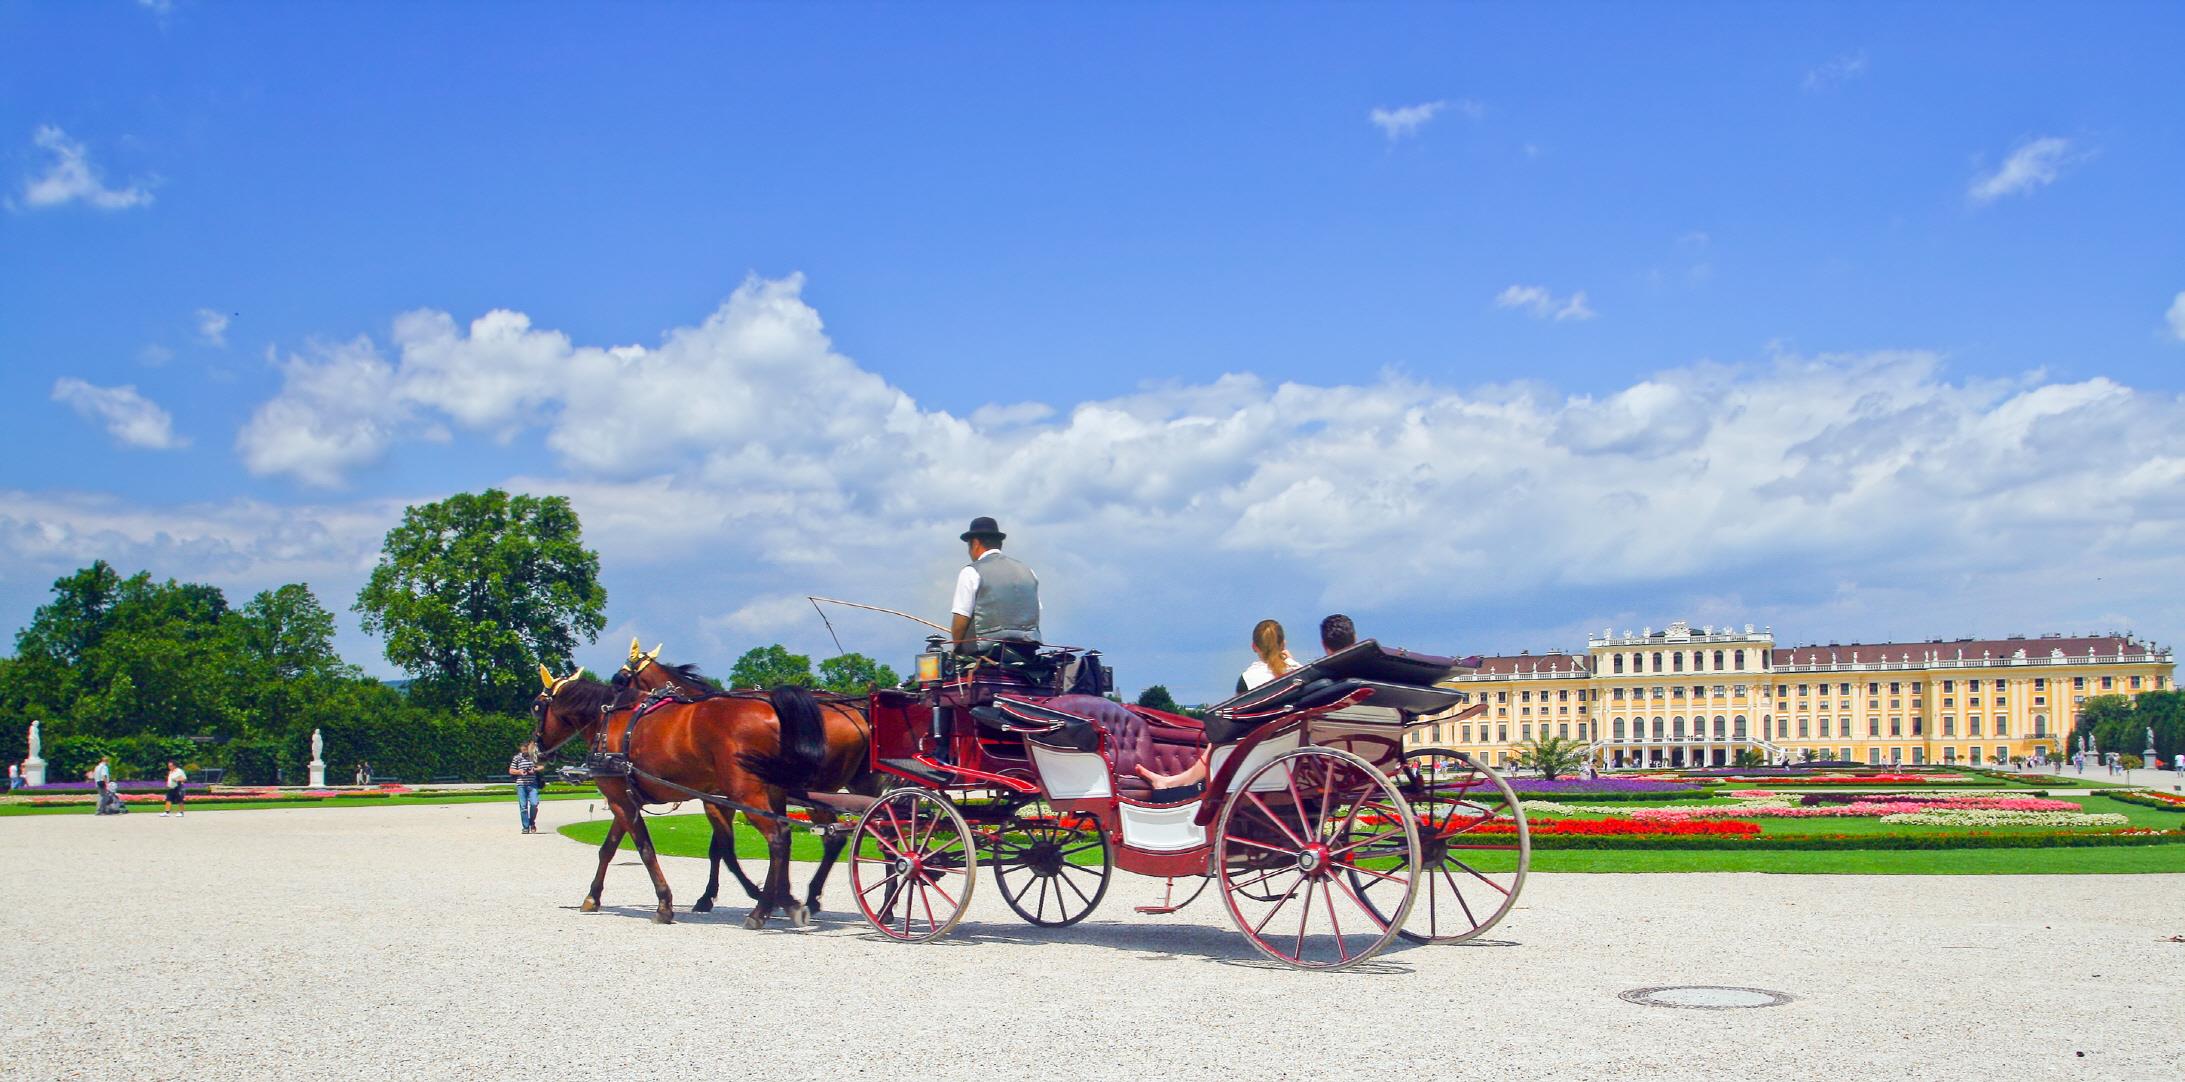 비엔나 왕궁마차 체험  Vienna royal carriage tour